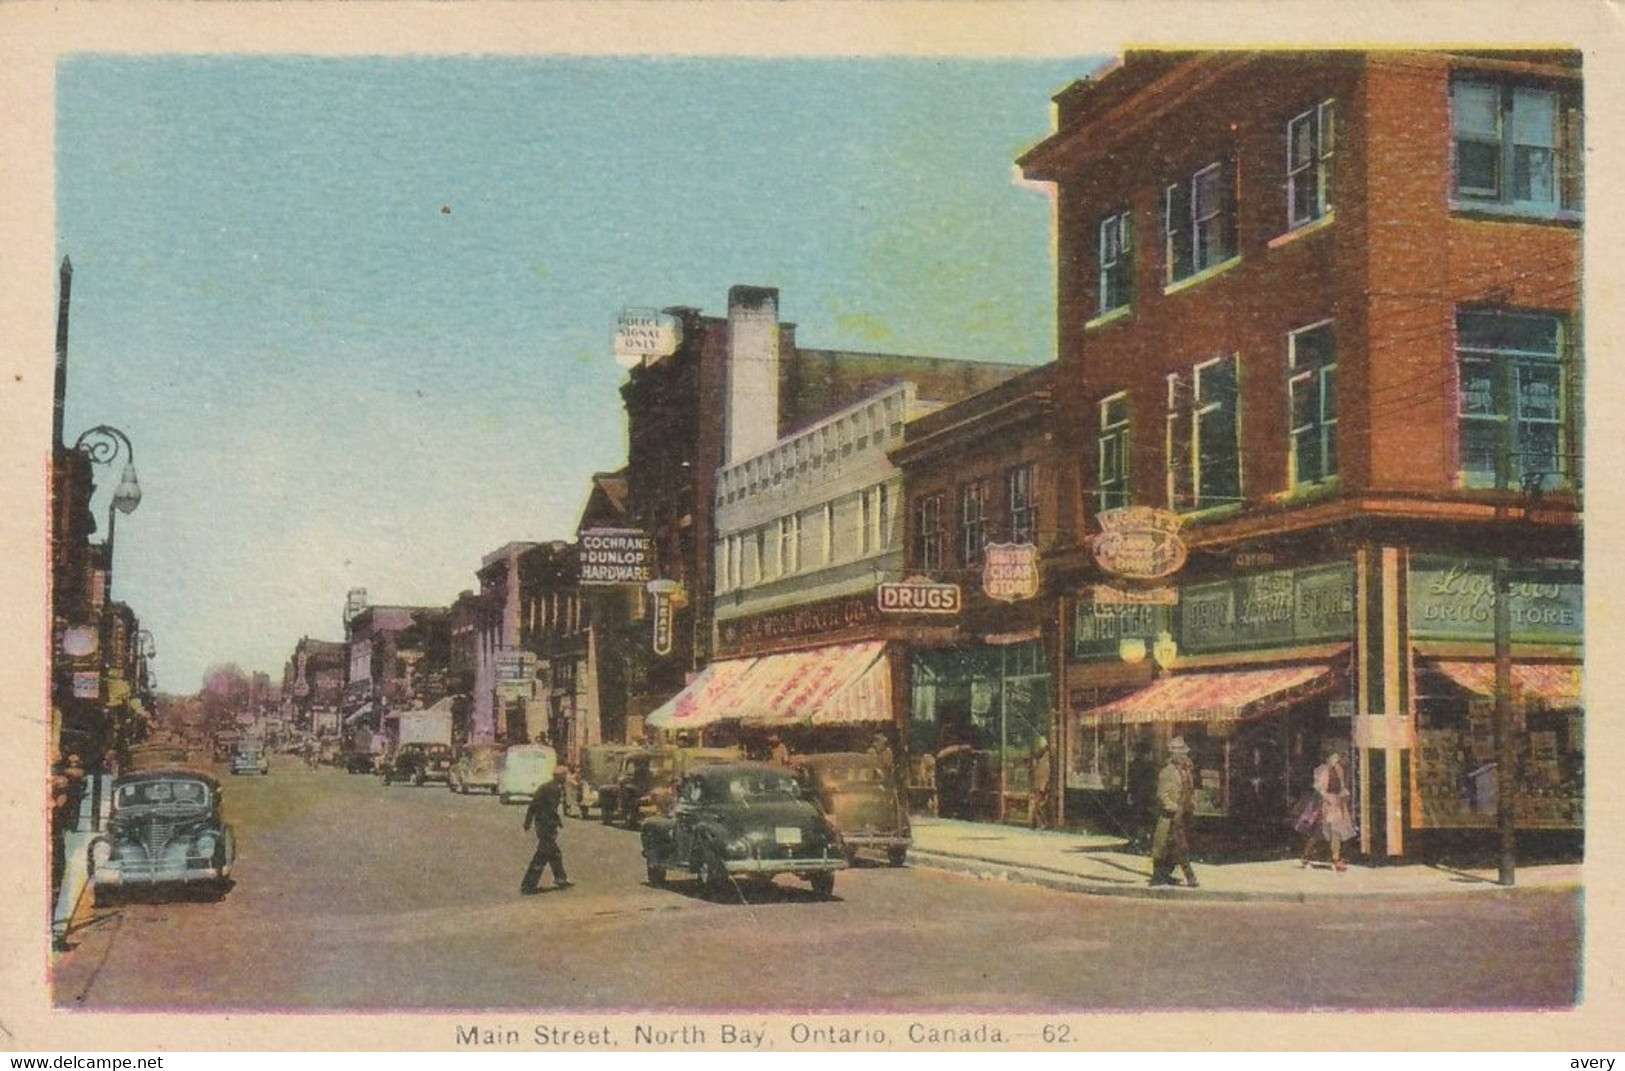 Main Street, North Bay, Ontario - North Bay